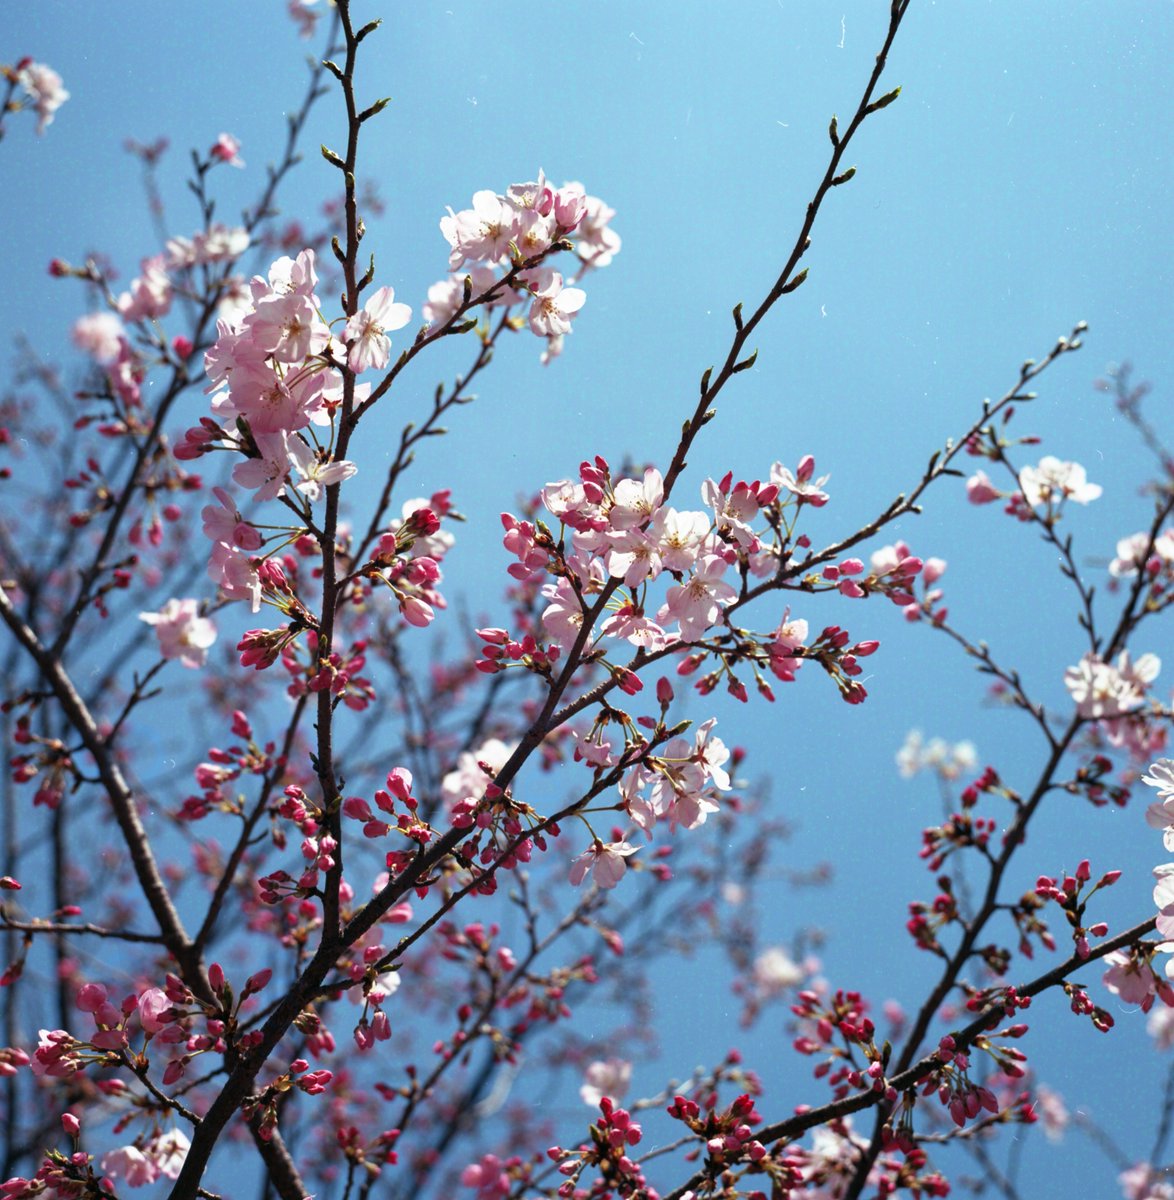 EKTAR Blue 
#桜 #Rolleiflex #Kodak #EKTAR